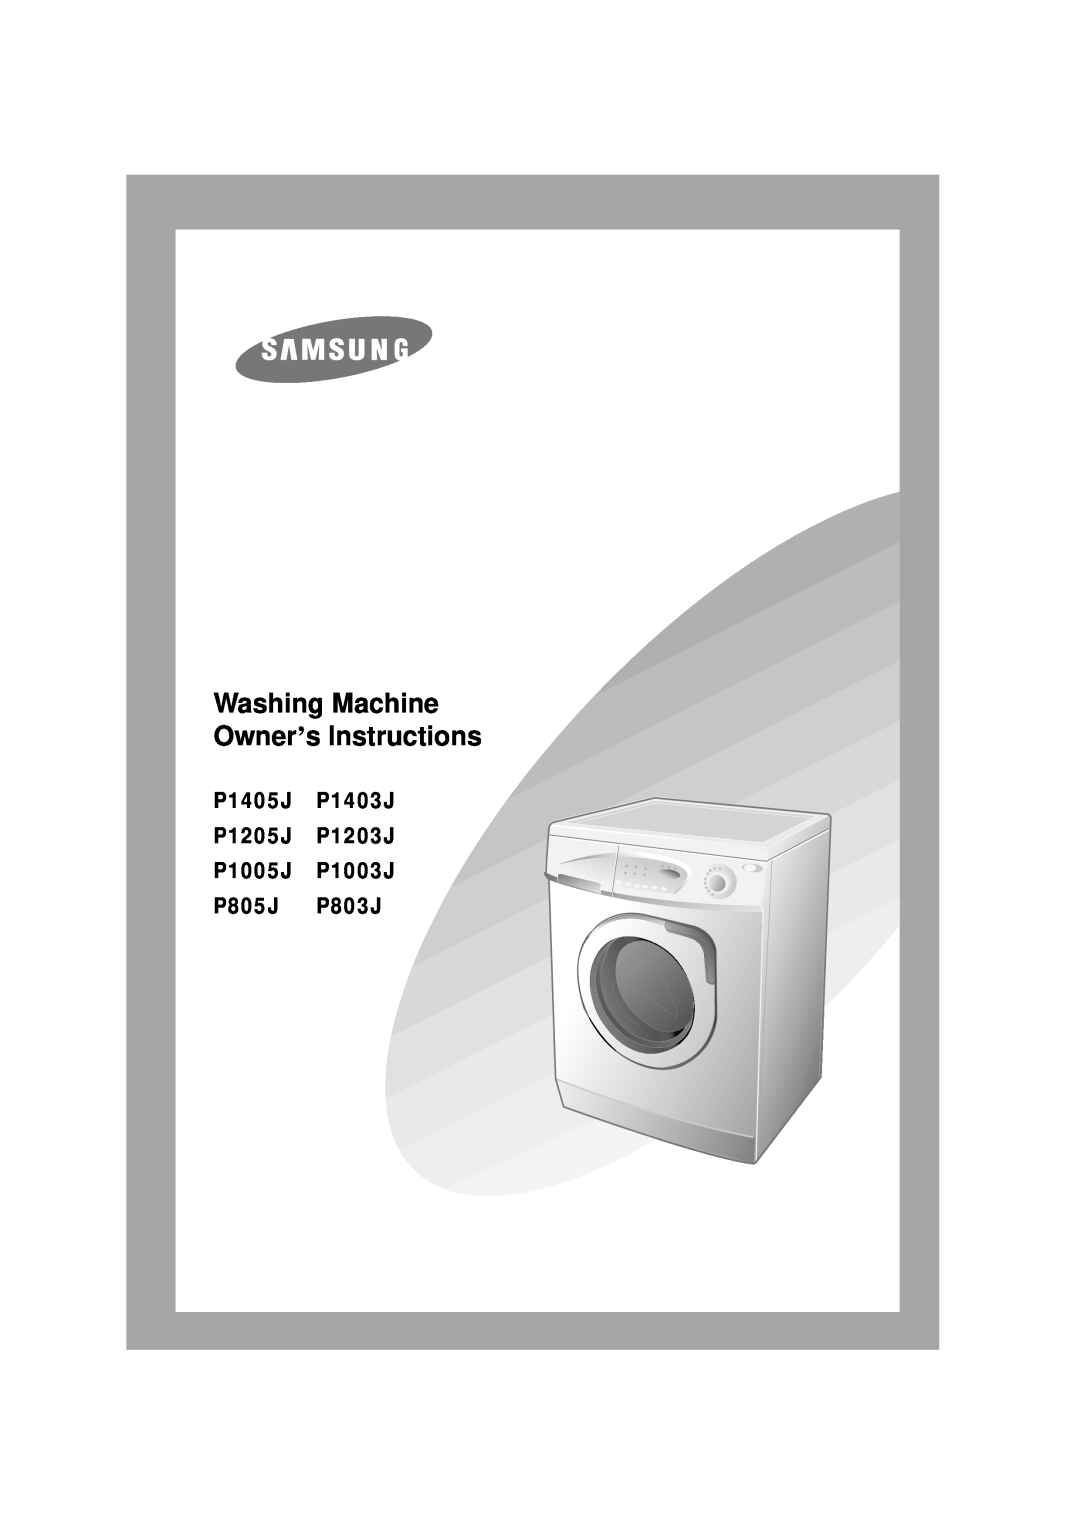 Samsung P1005j manual Washing Machine Owner’s Instructions, P1405J P1403J P1205J P1203J P1005J P1003J P805J P803J 